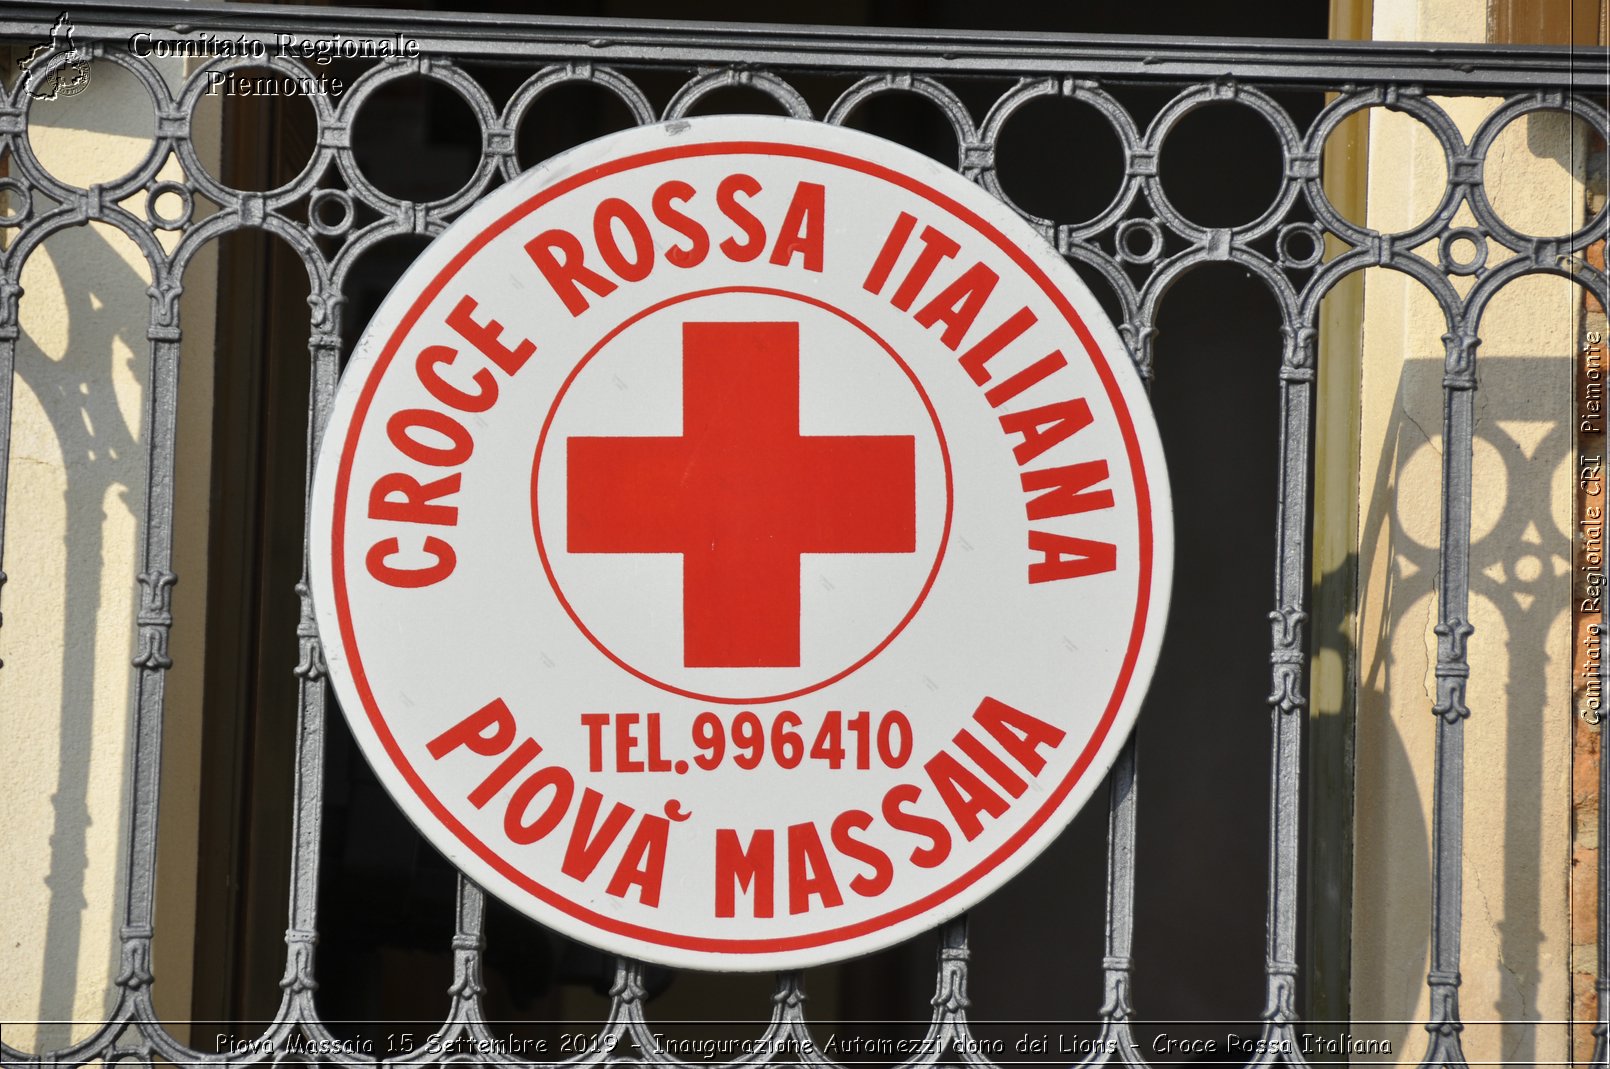 Piov Massaia 15 Settembre 2019 - Inaugurazione Automezzi dono dei Lions - Croce Rossa Italiana